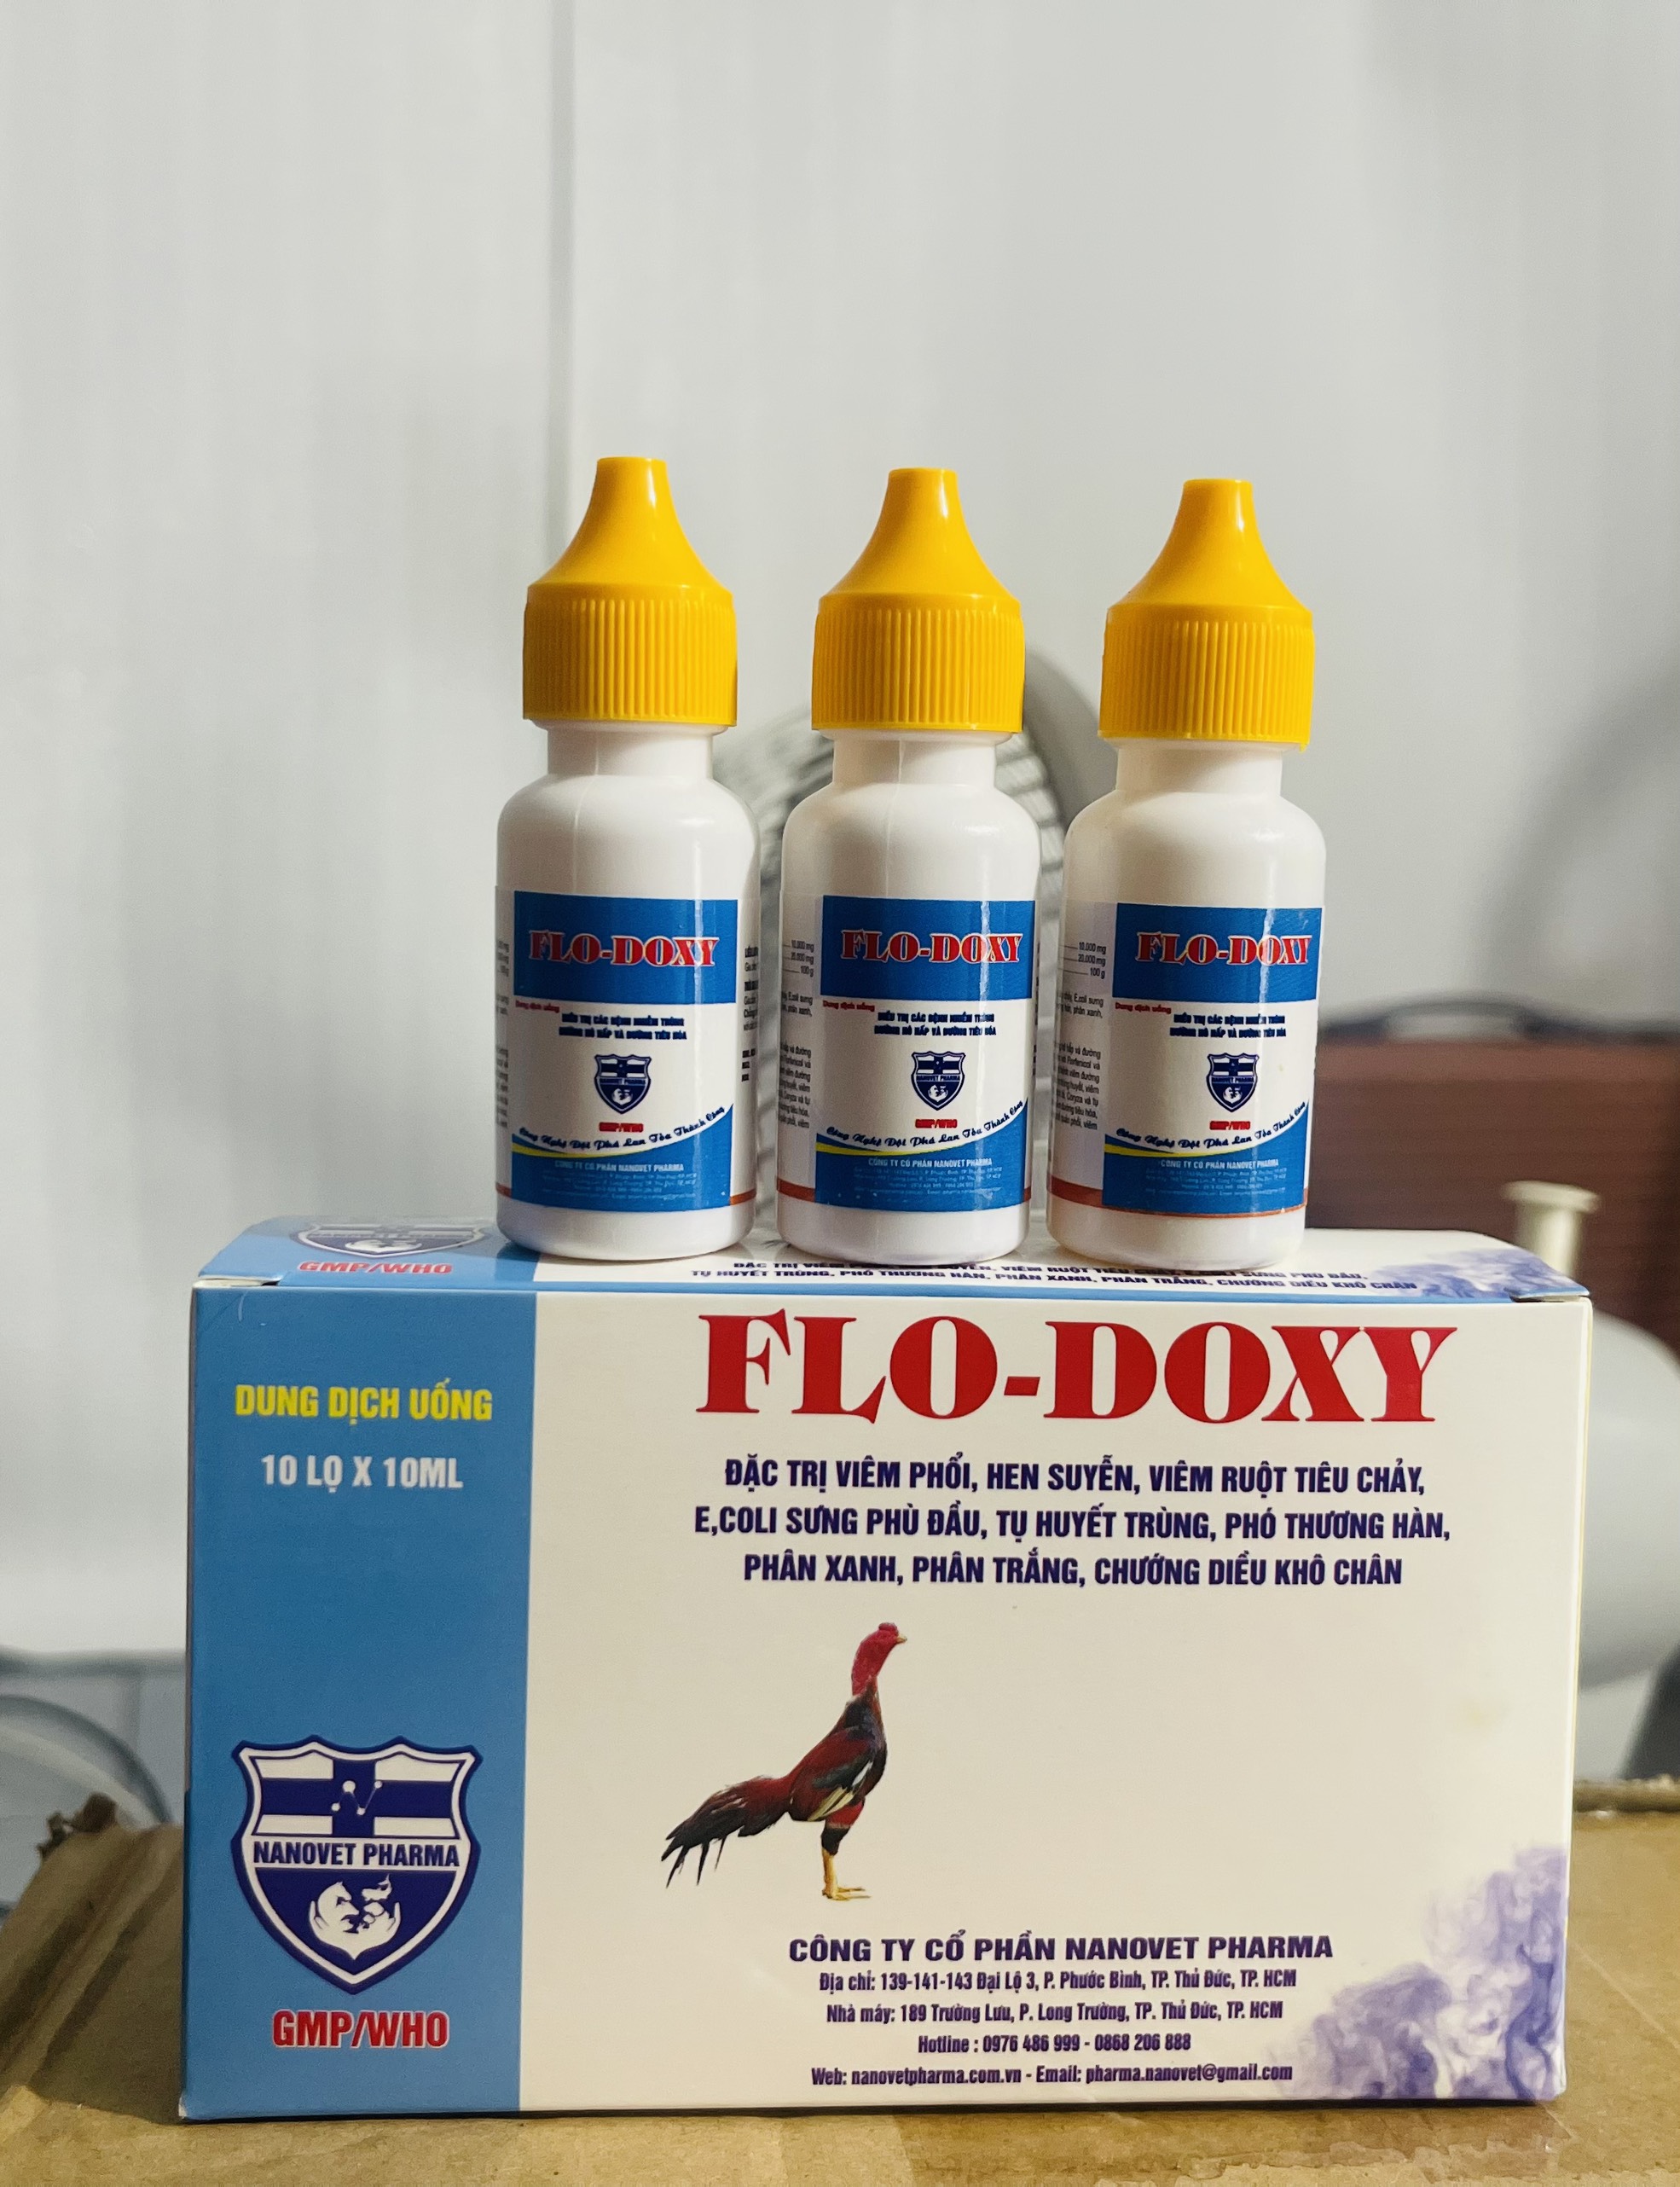 Flo - Doxy Chuyên hen khẹc, viêm hô hấp, phân xanh phân trắng cho gà đá